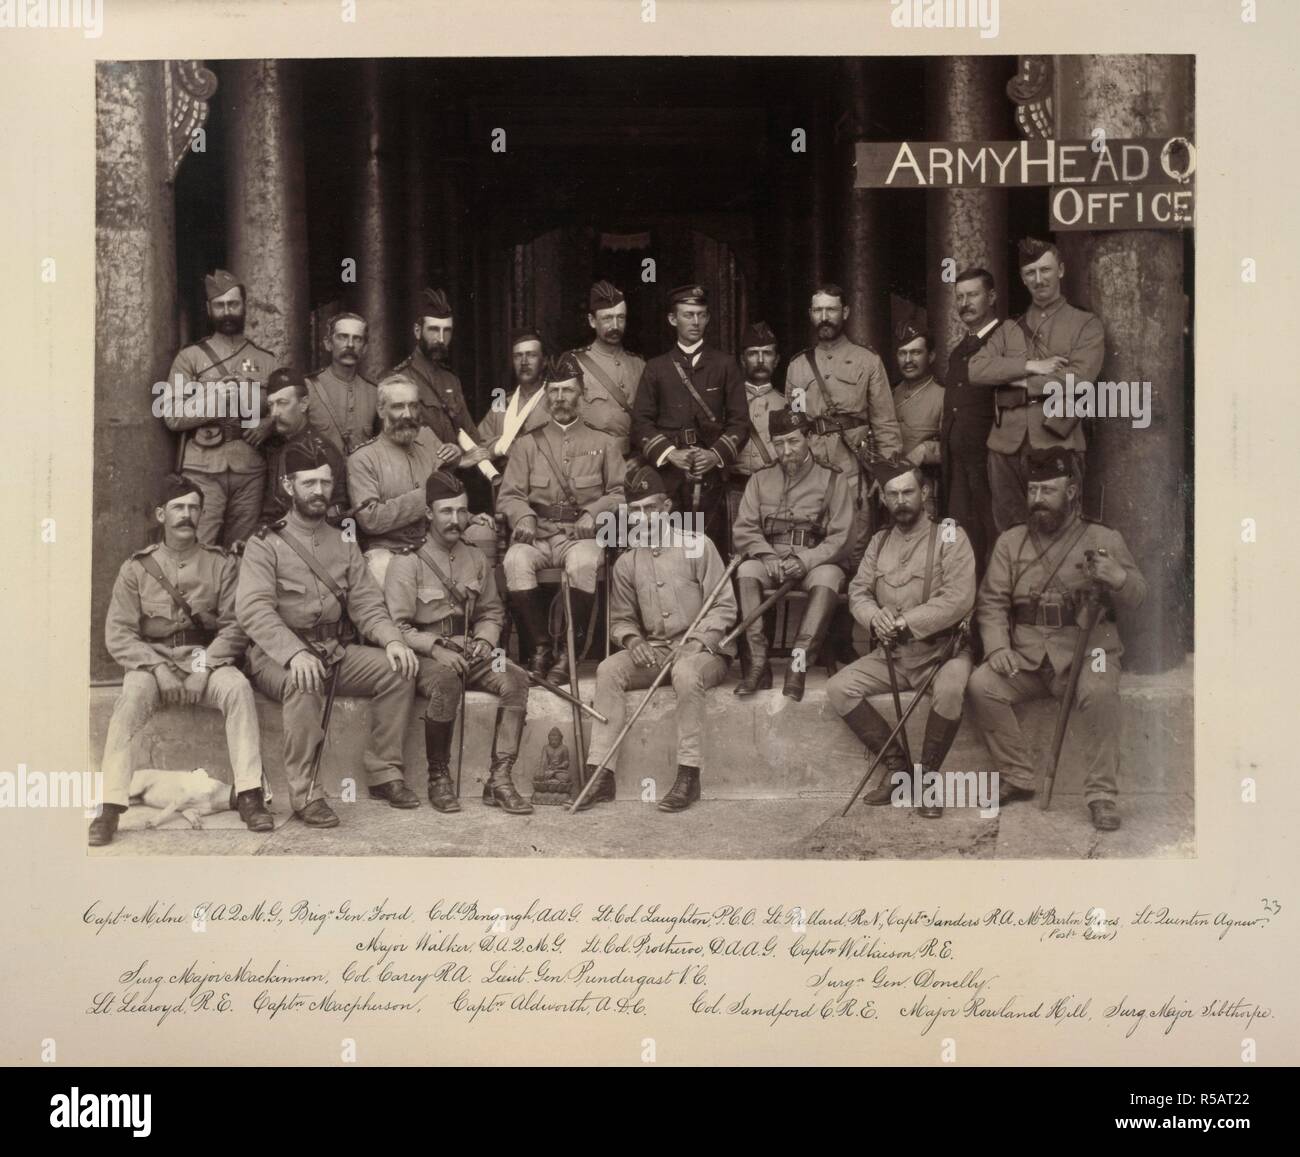 Groupe de M. Prendergast. 17 Dec 1885. Groupe de M. Prendergast, et beaucoup de ses collaborateurs, pris en face du hall de l'auditoire dans le palais de Mandalay, le 17 décembre, 1885. Sitters nommés comme suit : 'Le Capt Milne, DAQMG ; Brig Gen Foord ; Col Bengough, AAG ; Lt Col Laughton, BCP ; Lt Ballard, RN ; le Capt Sanders, RA ; M. Barton Groves (Post Gen) ; Lt Quenton Agnew ; Major Walker, DAQMG ; Lt Col Protheroe, DAAG ; le Capt Wilkieson, Rê, le médecin-chef Mackinnon majeur ; Col Carey, RA ; le lieutenant Gen Prendergast, VC ; Méd Donelly ; Lt Learoyd, RE ; le Capt Macpherson ; le Capt Aldworth, ADG ; Col Sandford, CRE ; Major Rowland Hill ; Banque D'Images